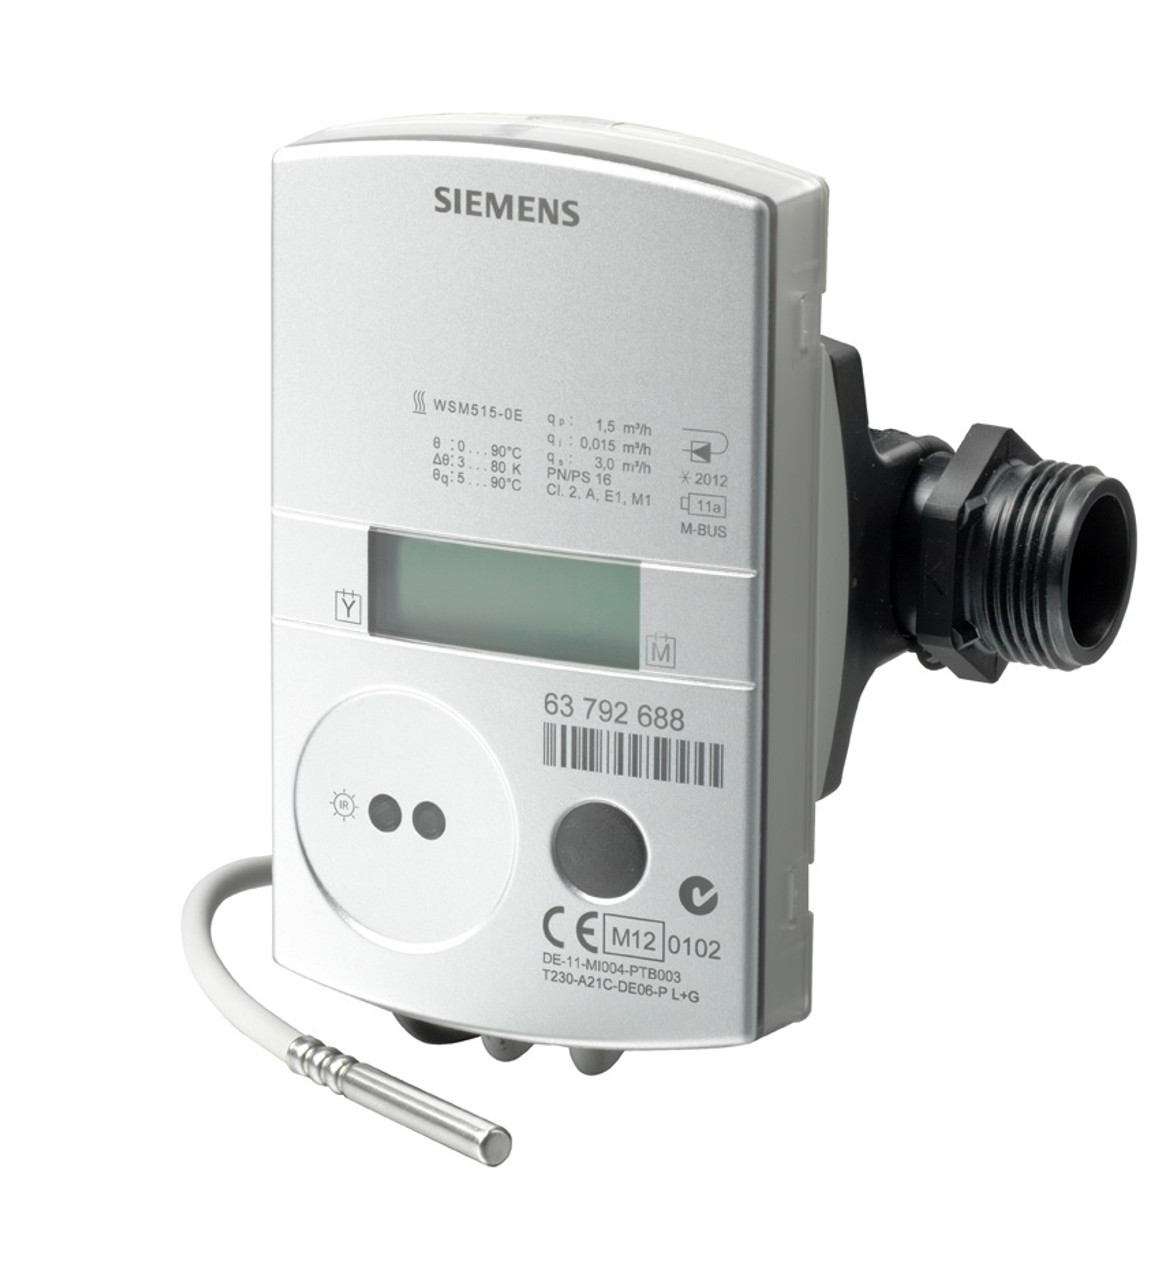 Siemens WSM515-0E, Ultrasonic heat meter, S55561-F135